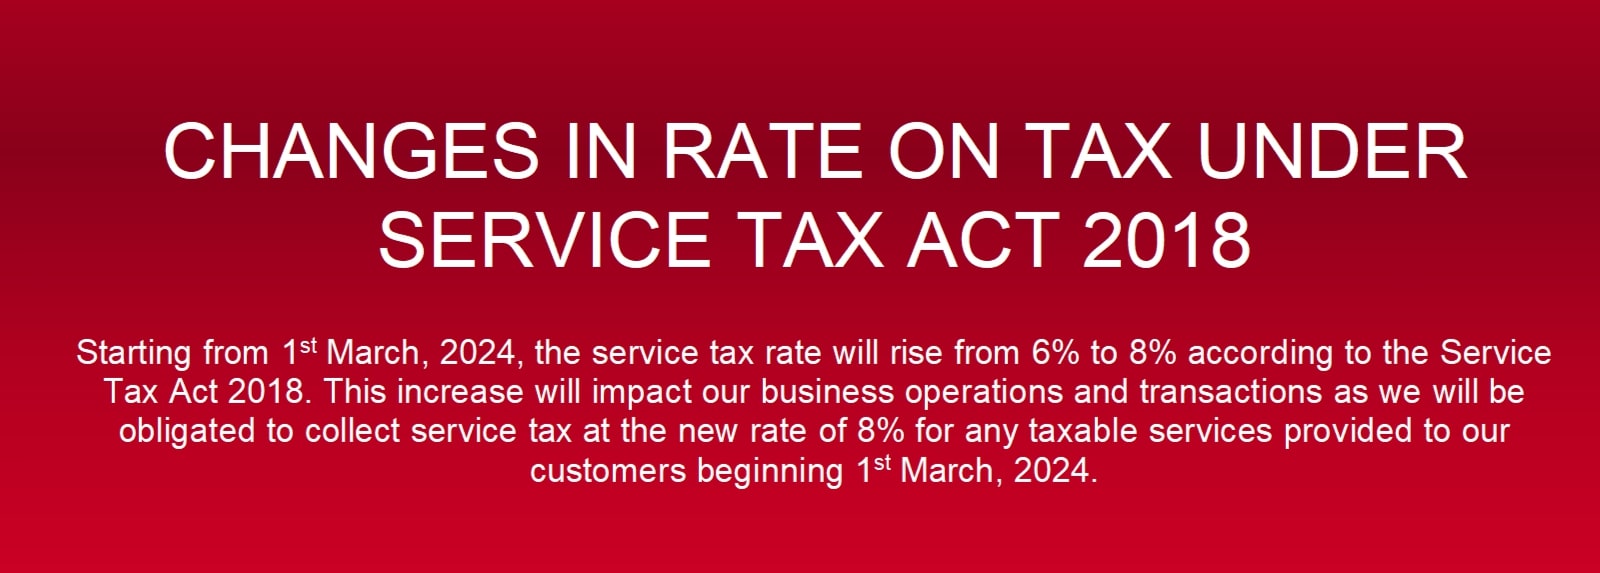 New SST Tax Rate 8%